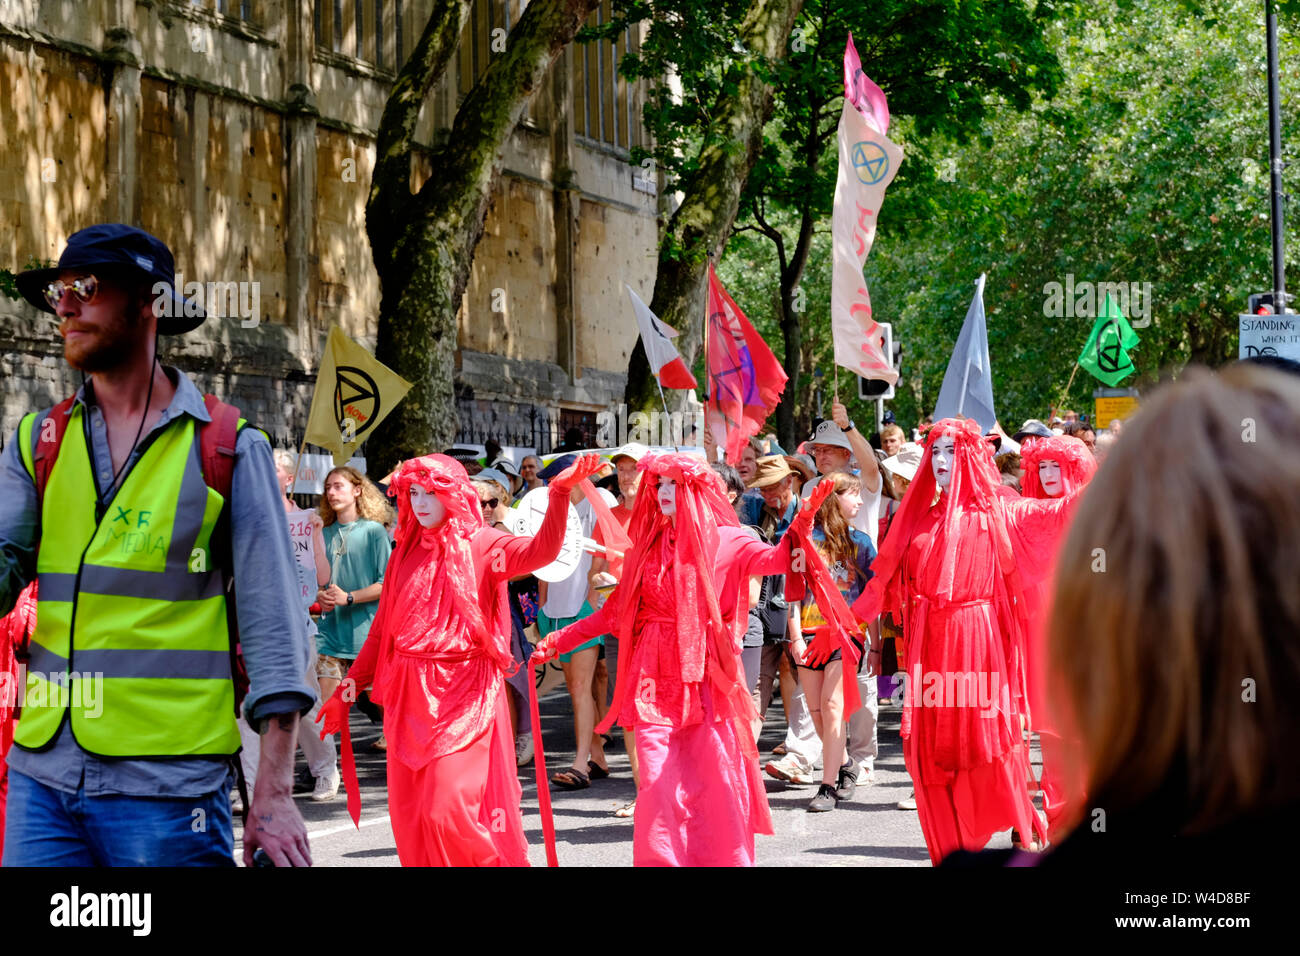 Las Brigadas Rojas apoyar el movimiento de rebelión de extinción alzamiento de verano; un grupo de Bristol han ocupado el puente en el centro de la ciudad. La protesta Foto de stock